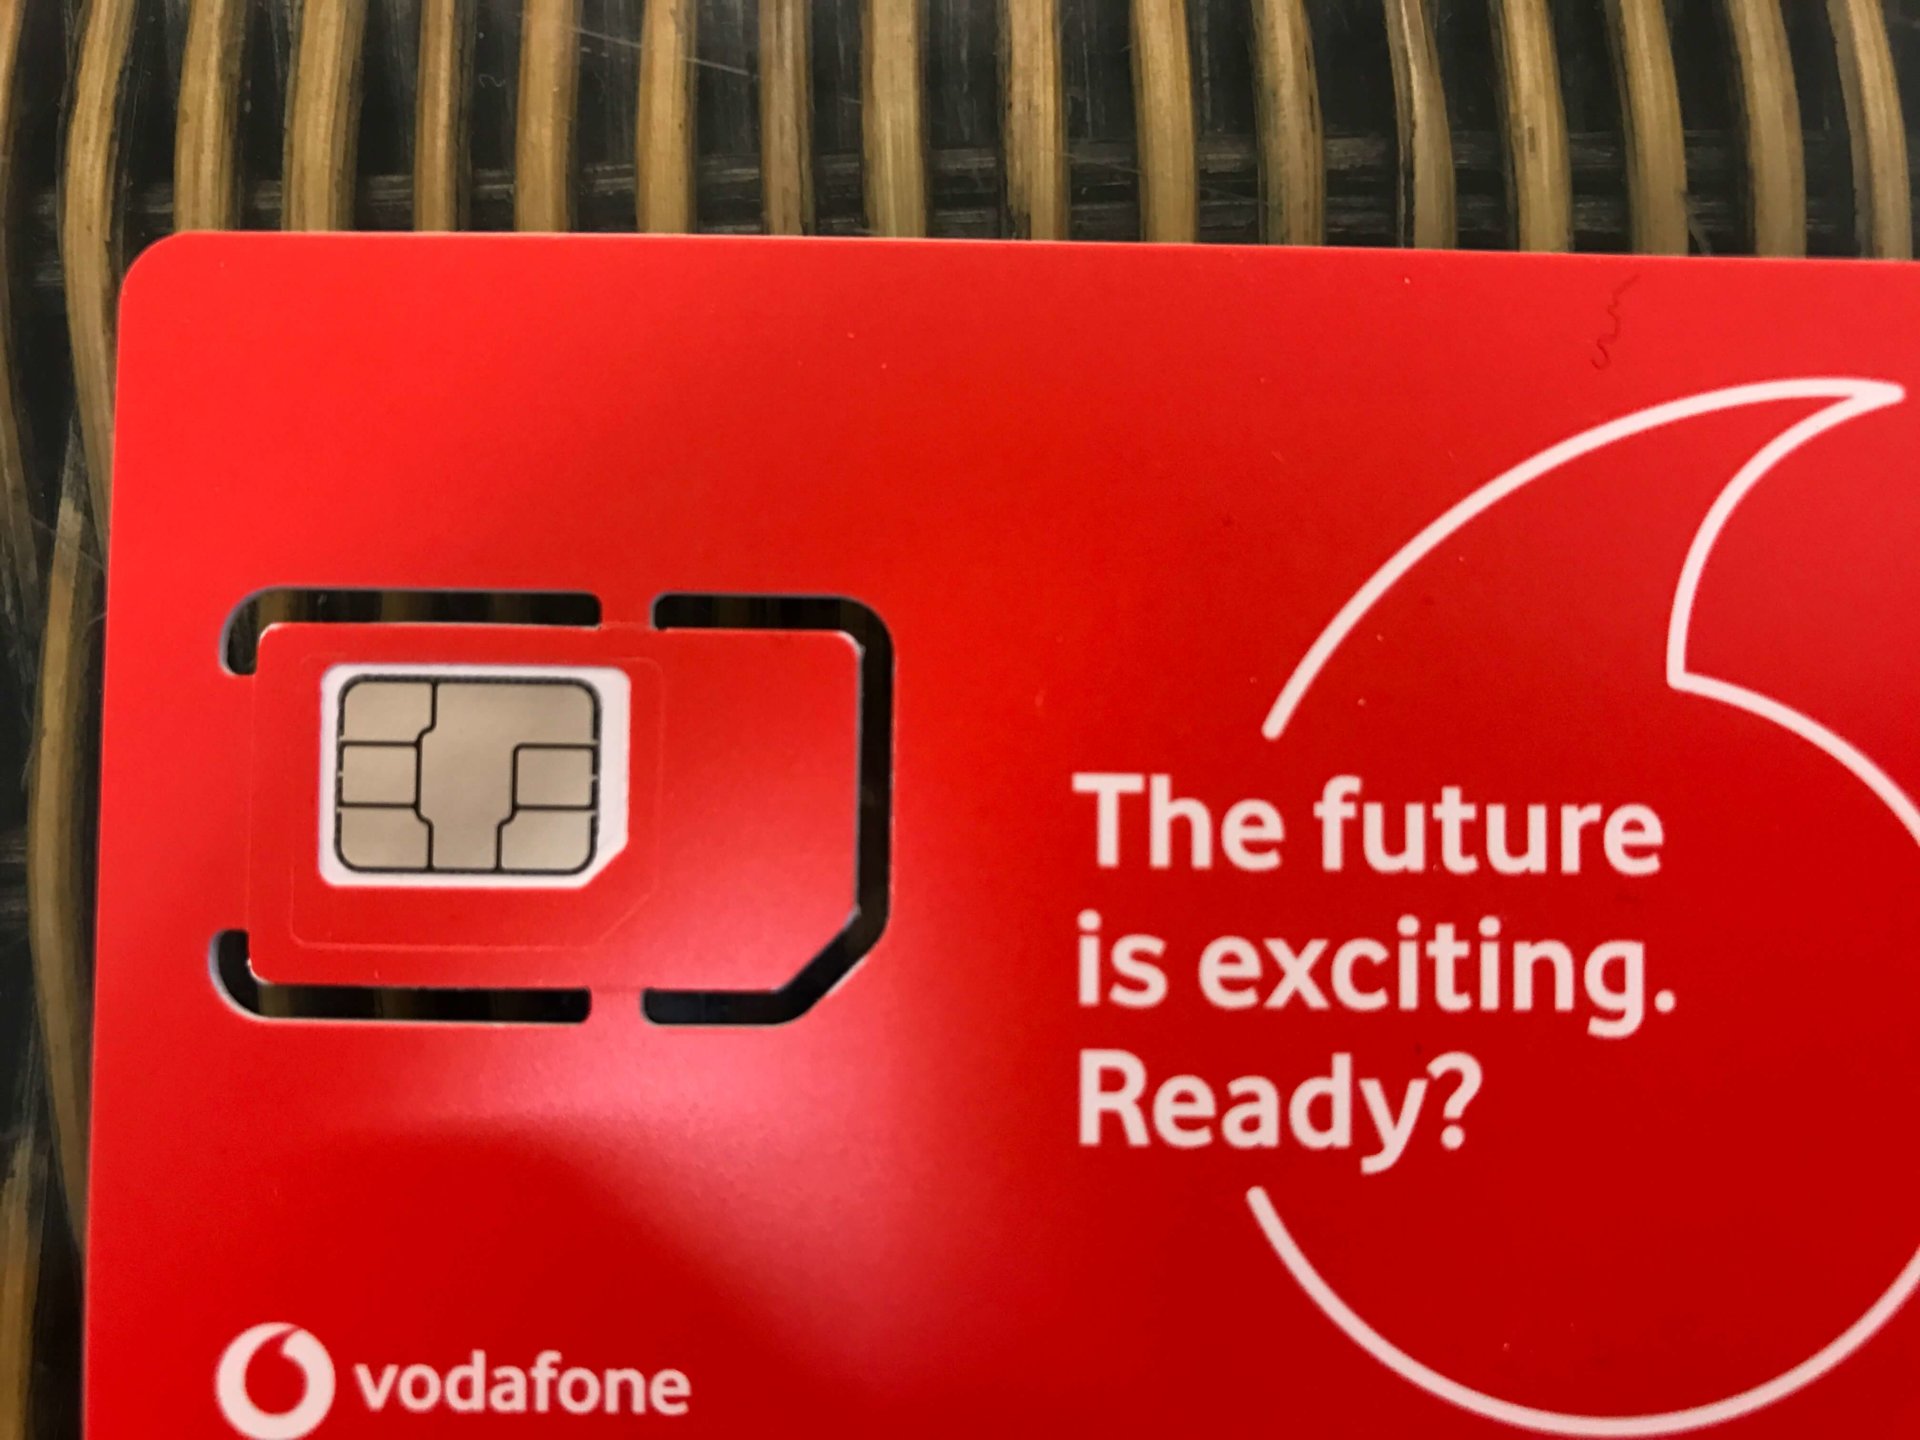 ケアンズでスマホにSIMカードの設定を仕様【Vodafone編】